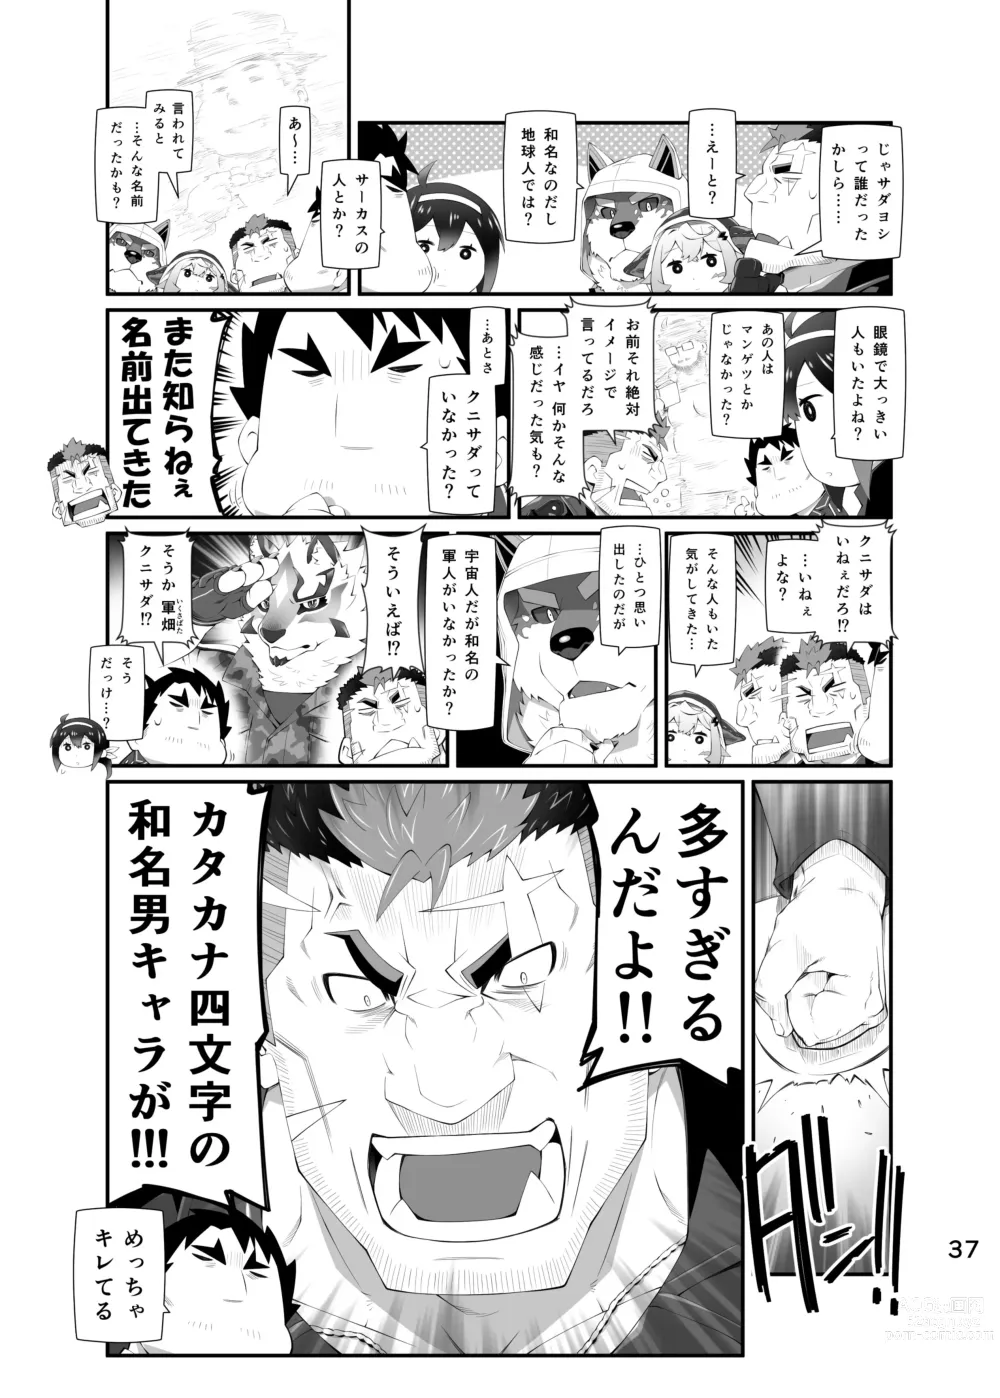 Page 36 of doujinshi LIVE AH ERO